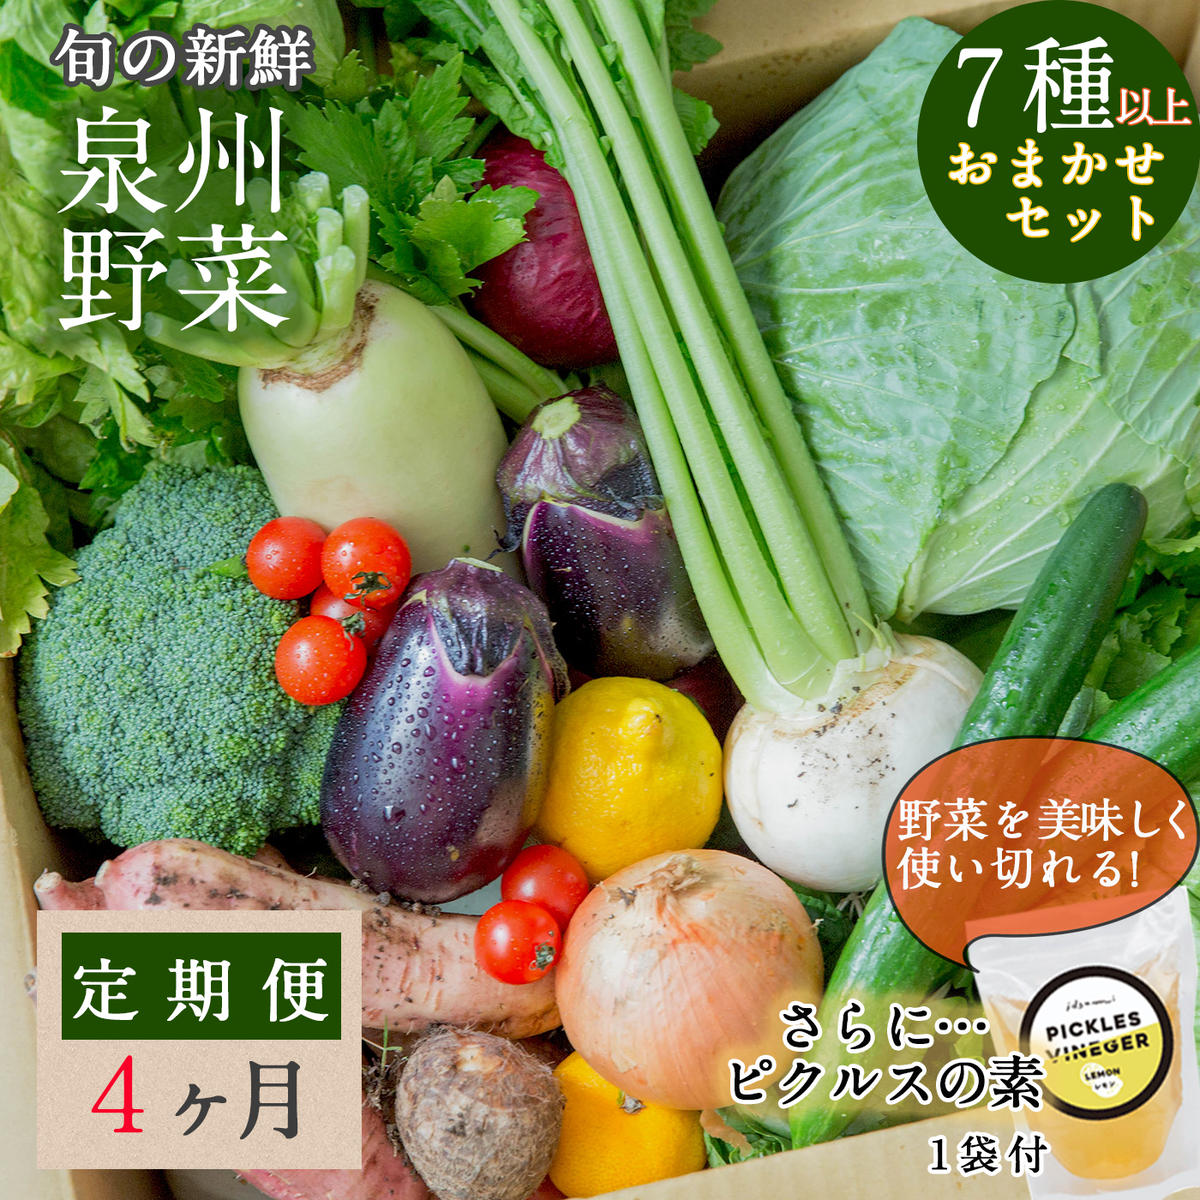 旬の新鮮 野菜セット（7種以上）定期便 全4回 おまかせ ピクルスの素付き ファミリー向け【毎月配送コース】